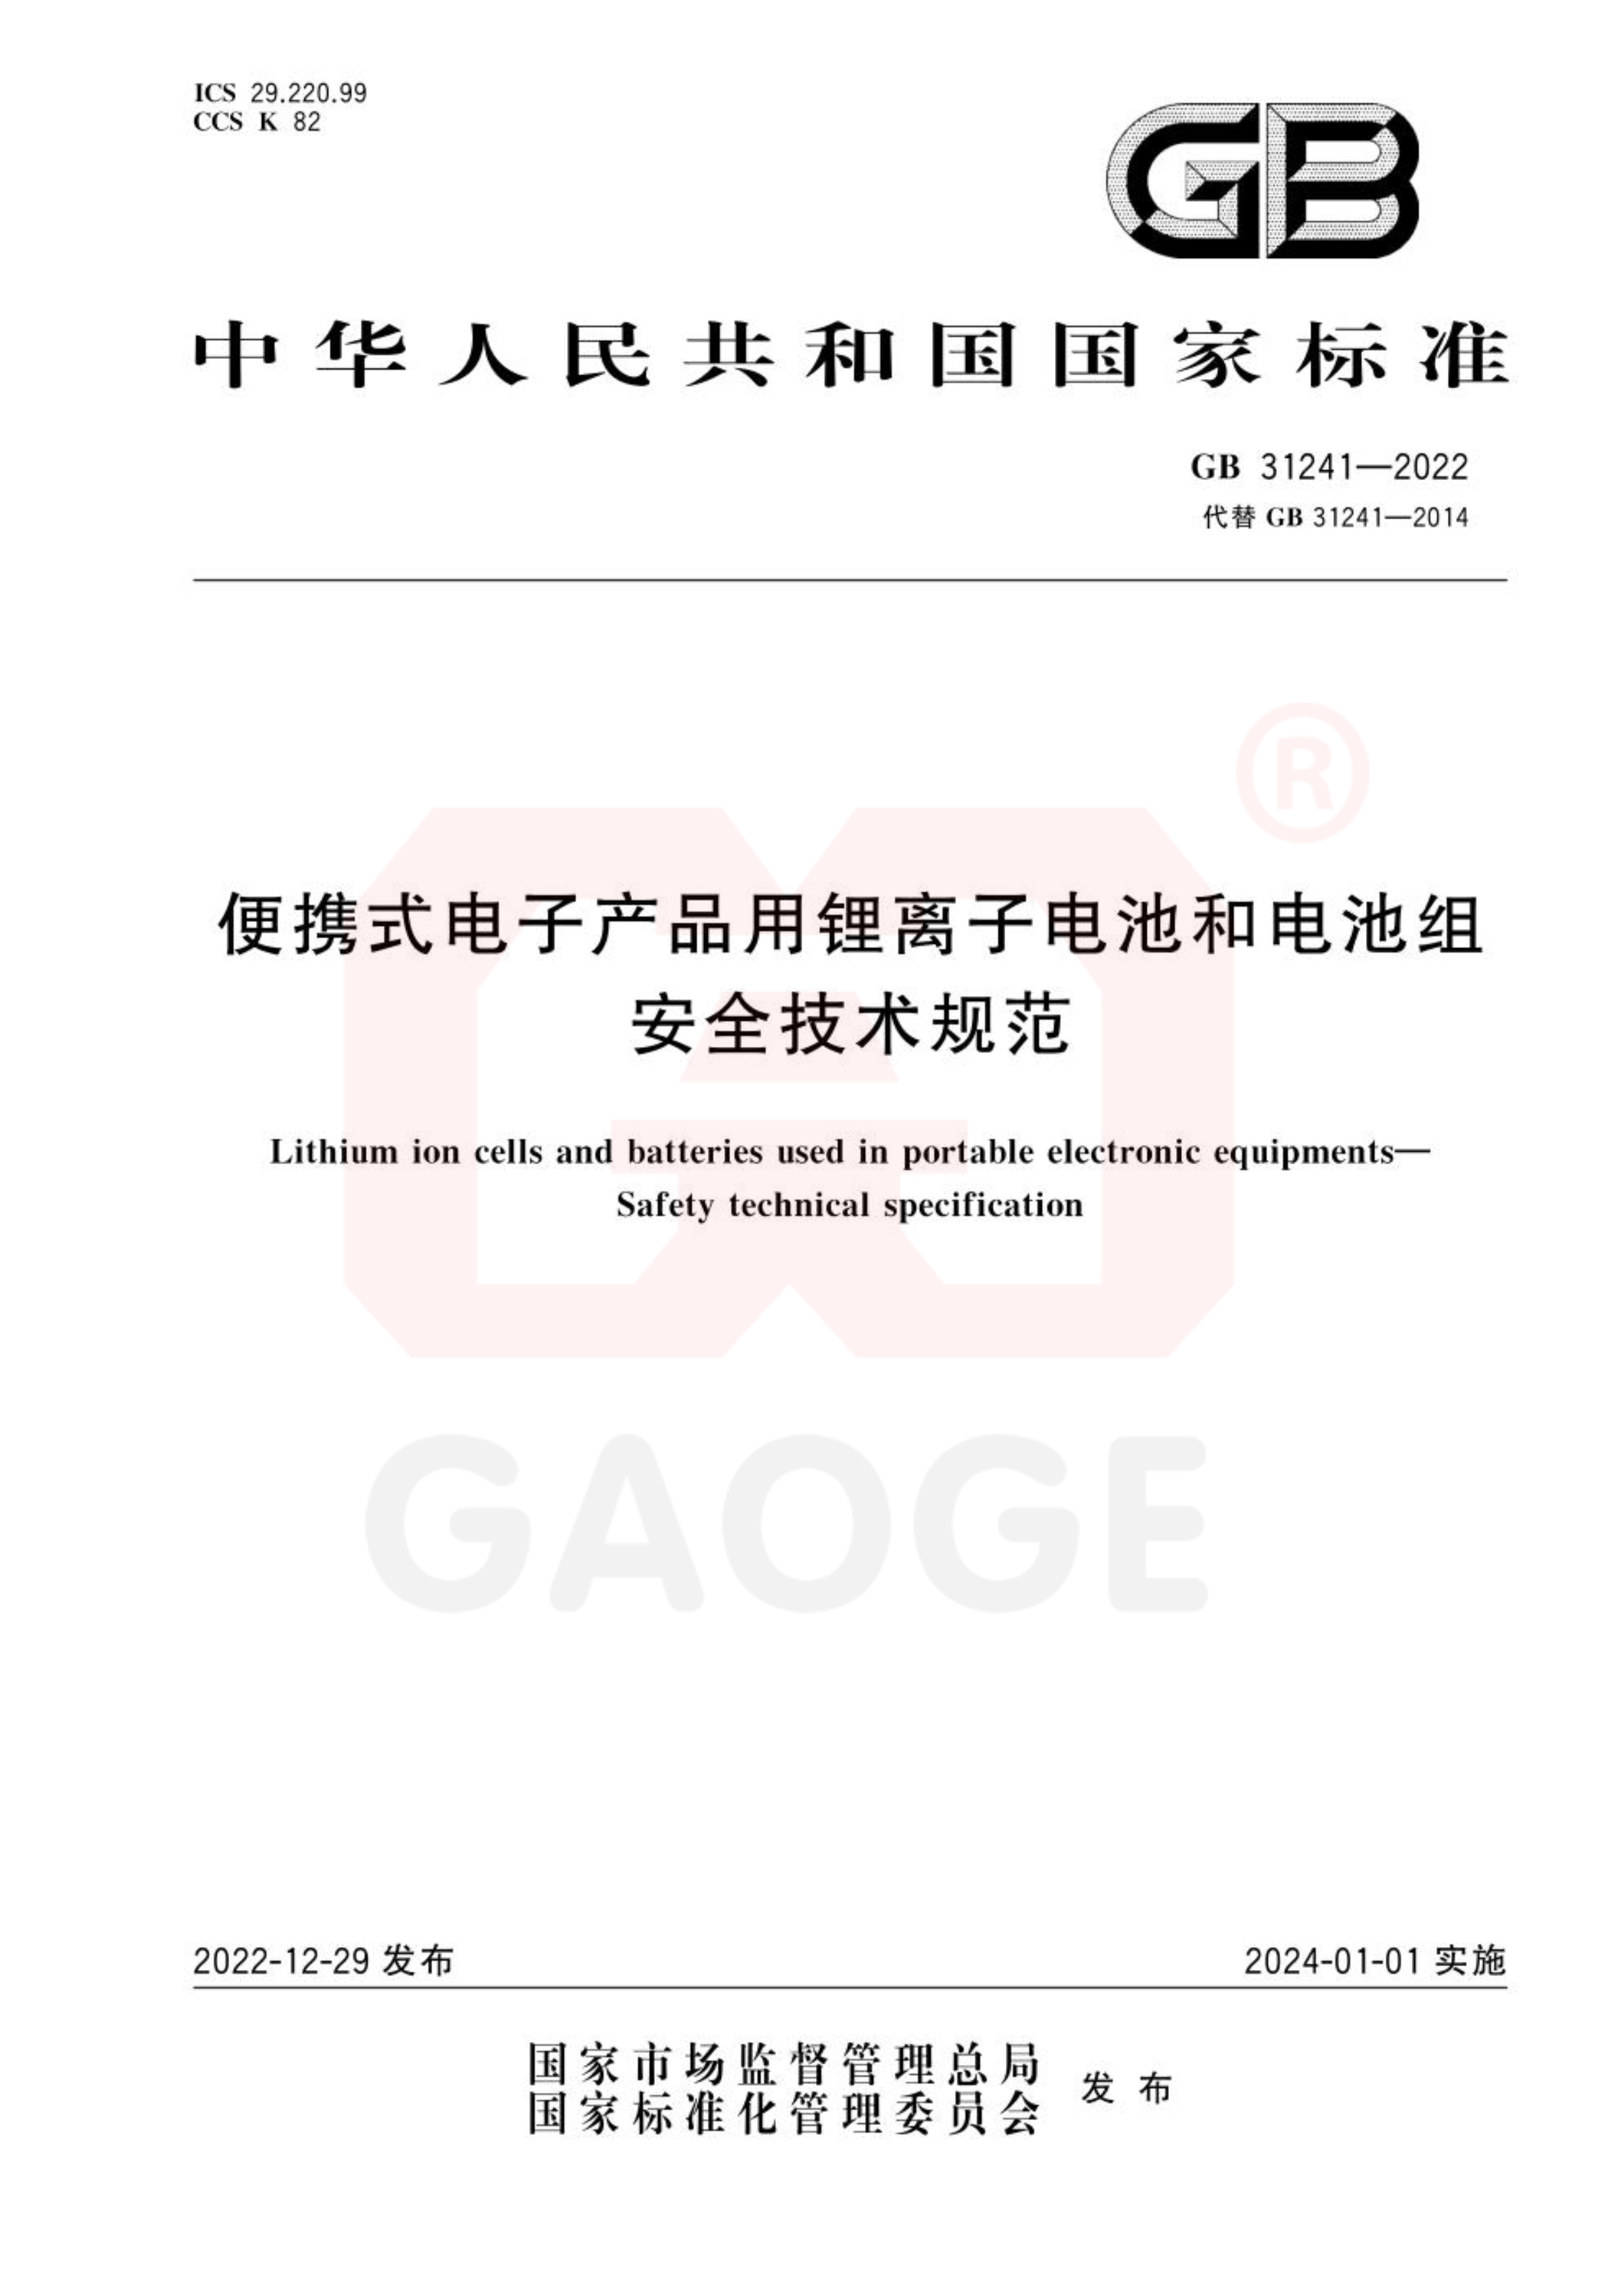 GB 31241-2022_《便携式电子产品用锂离子电池和电池组安全技术规范》